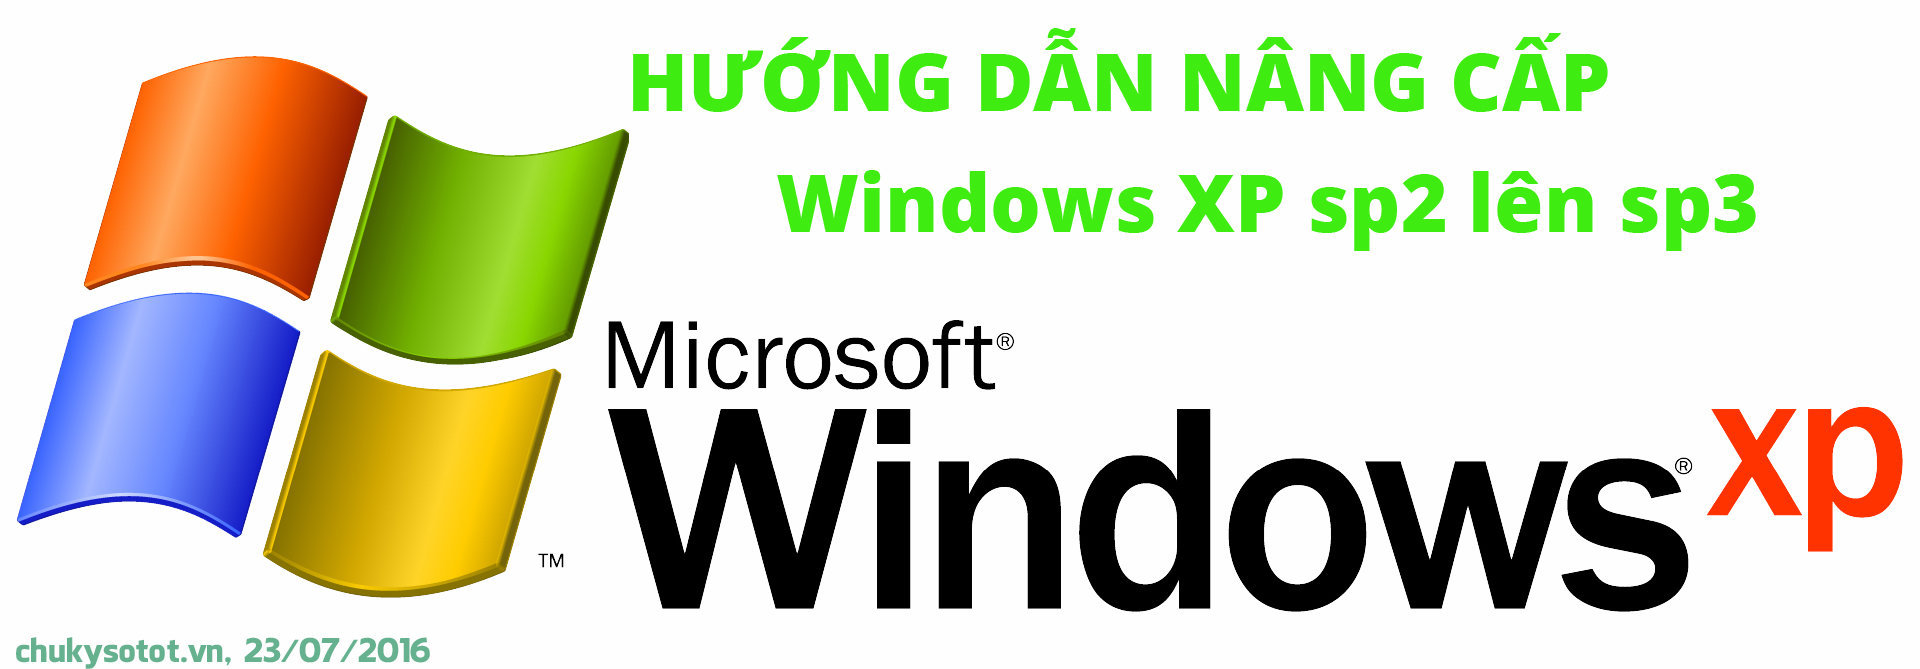 chukysotot_vn_huong_dan_nang_cap_windows_xp_sp3